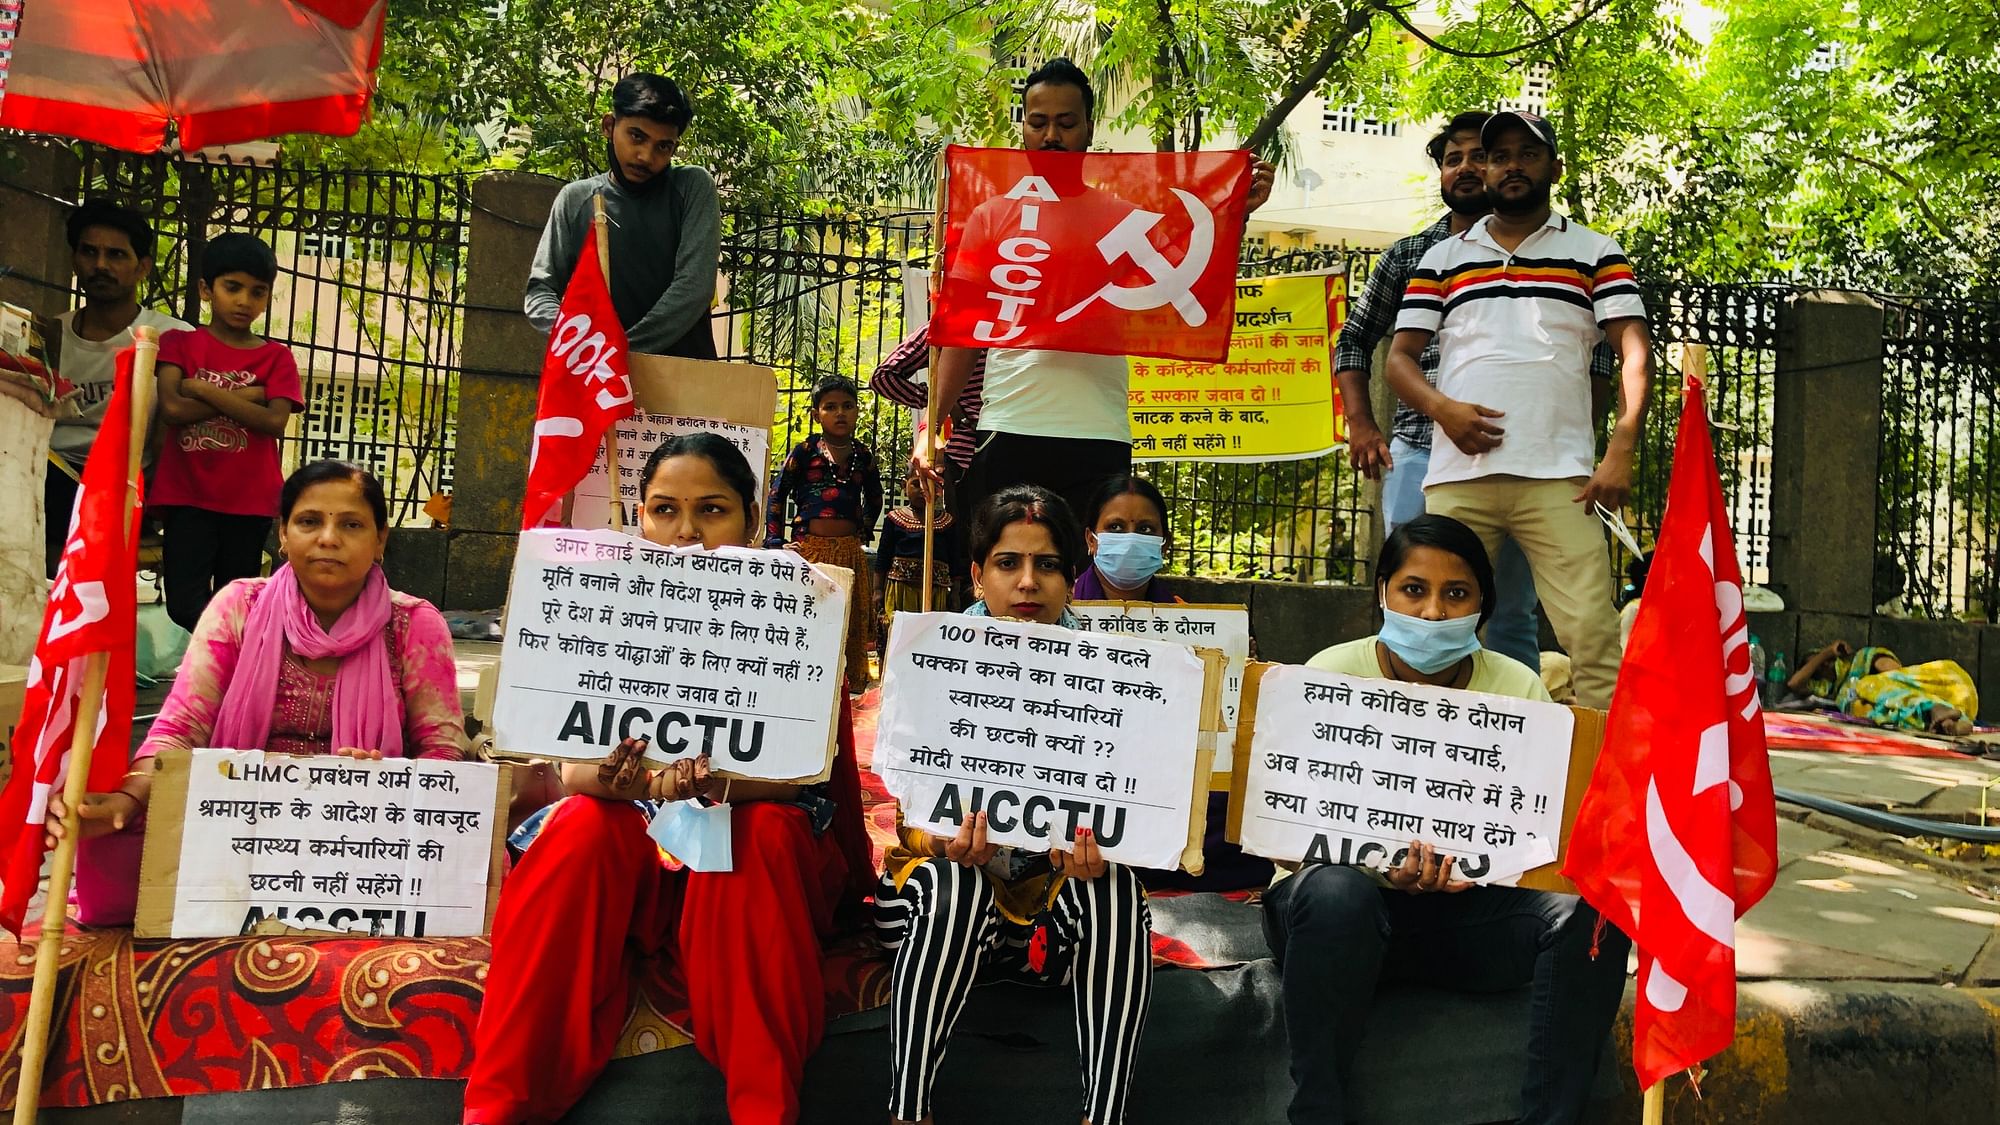 <div class="paragraphs"><p>दिल्ली के अस्पतालों के बाहर विरोध जताते नौकरी से निकाले गए कर्मचारी</p></div>